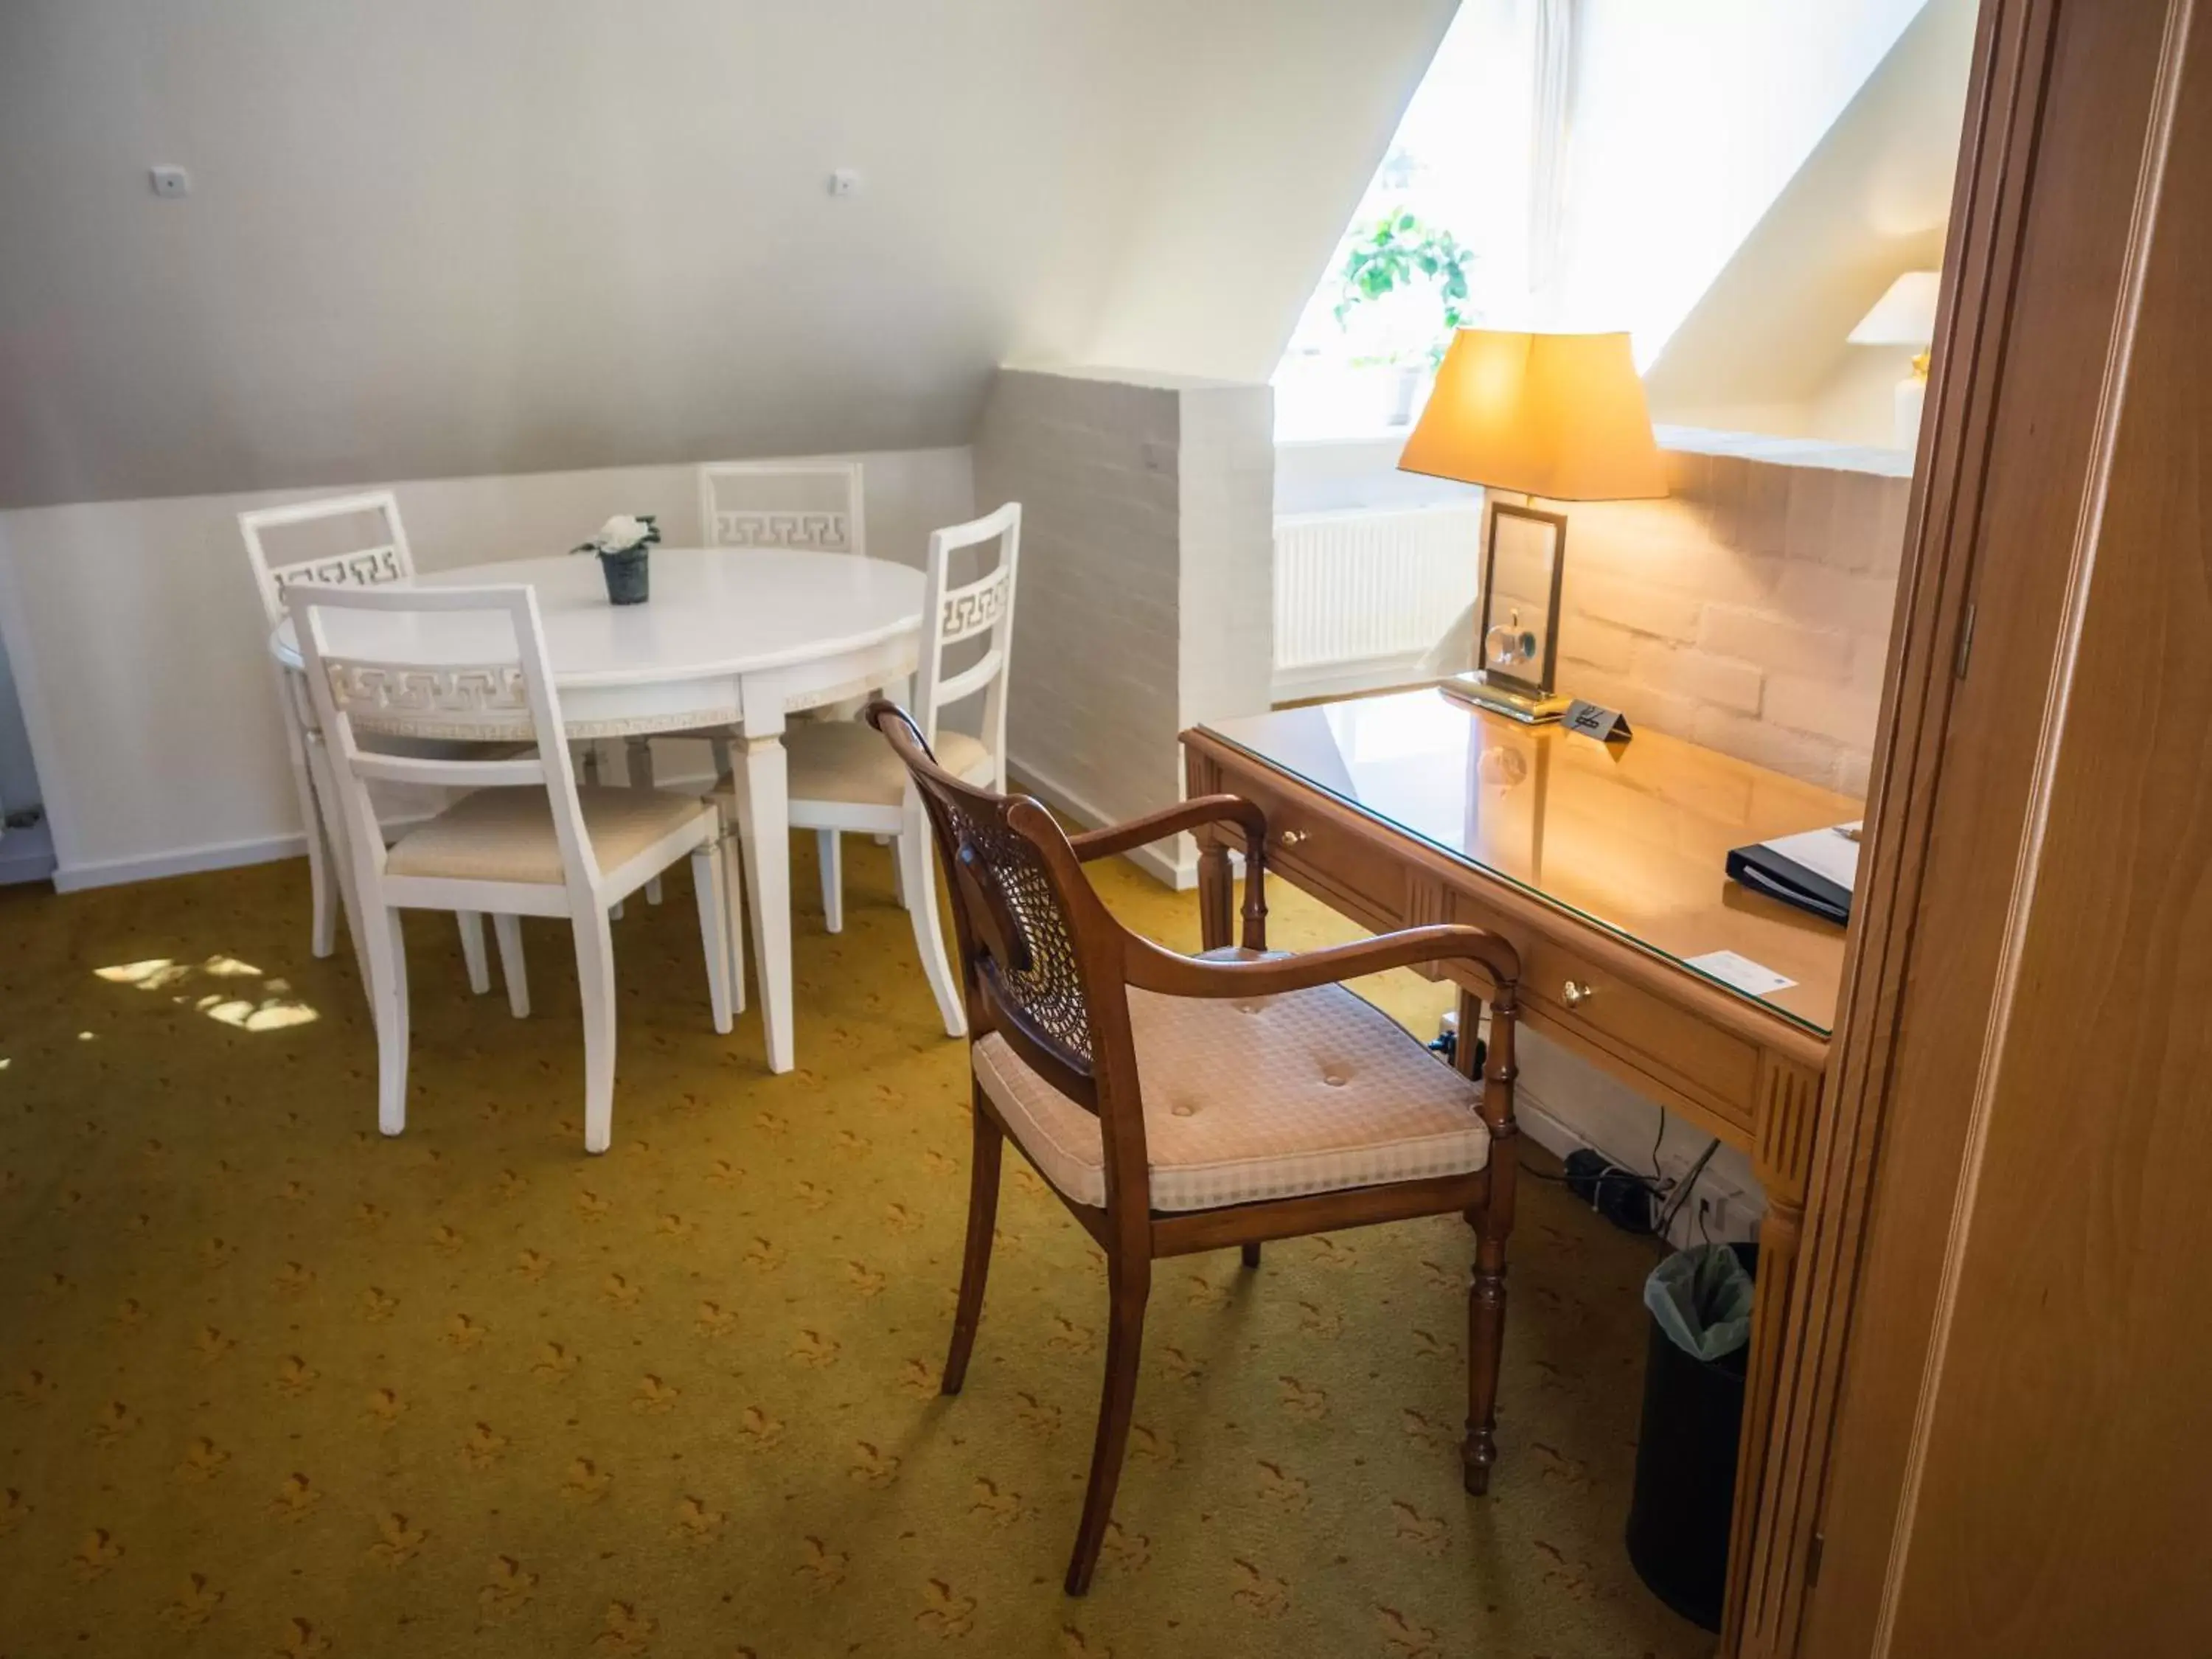 Seating area, Dining Area in Hotel Knudsens Gaard